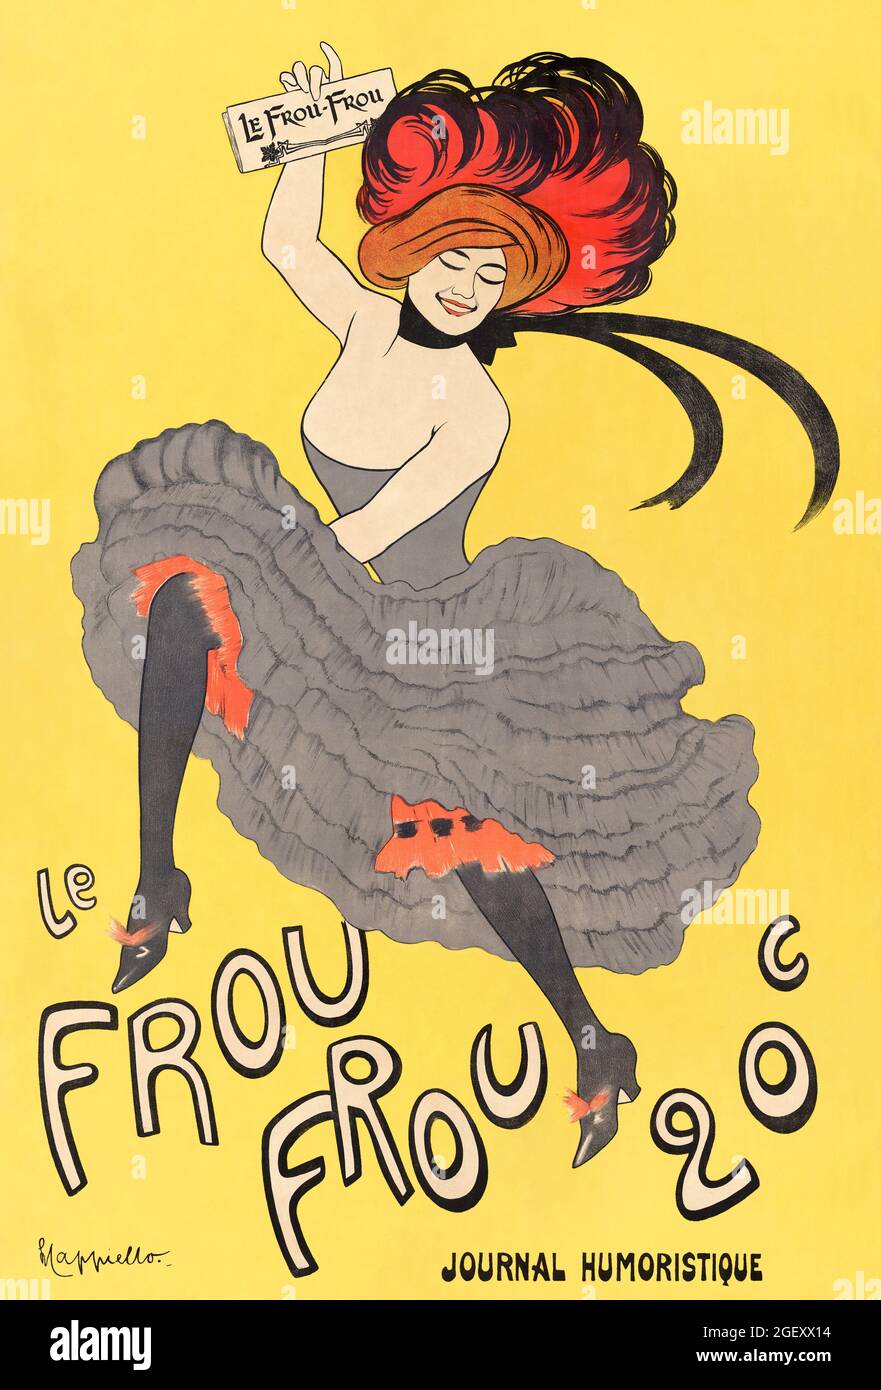 Le Frou Frou – Zeitschrift humoristique (1899) Druck in hoher Auflösung von Leonetto Cappiello. Jugendstil. Stockfoto